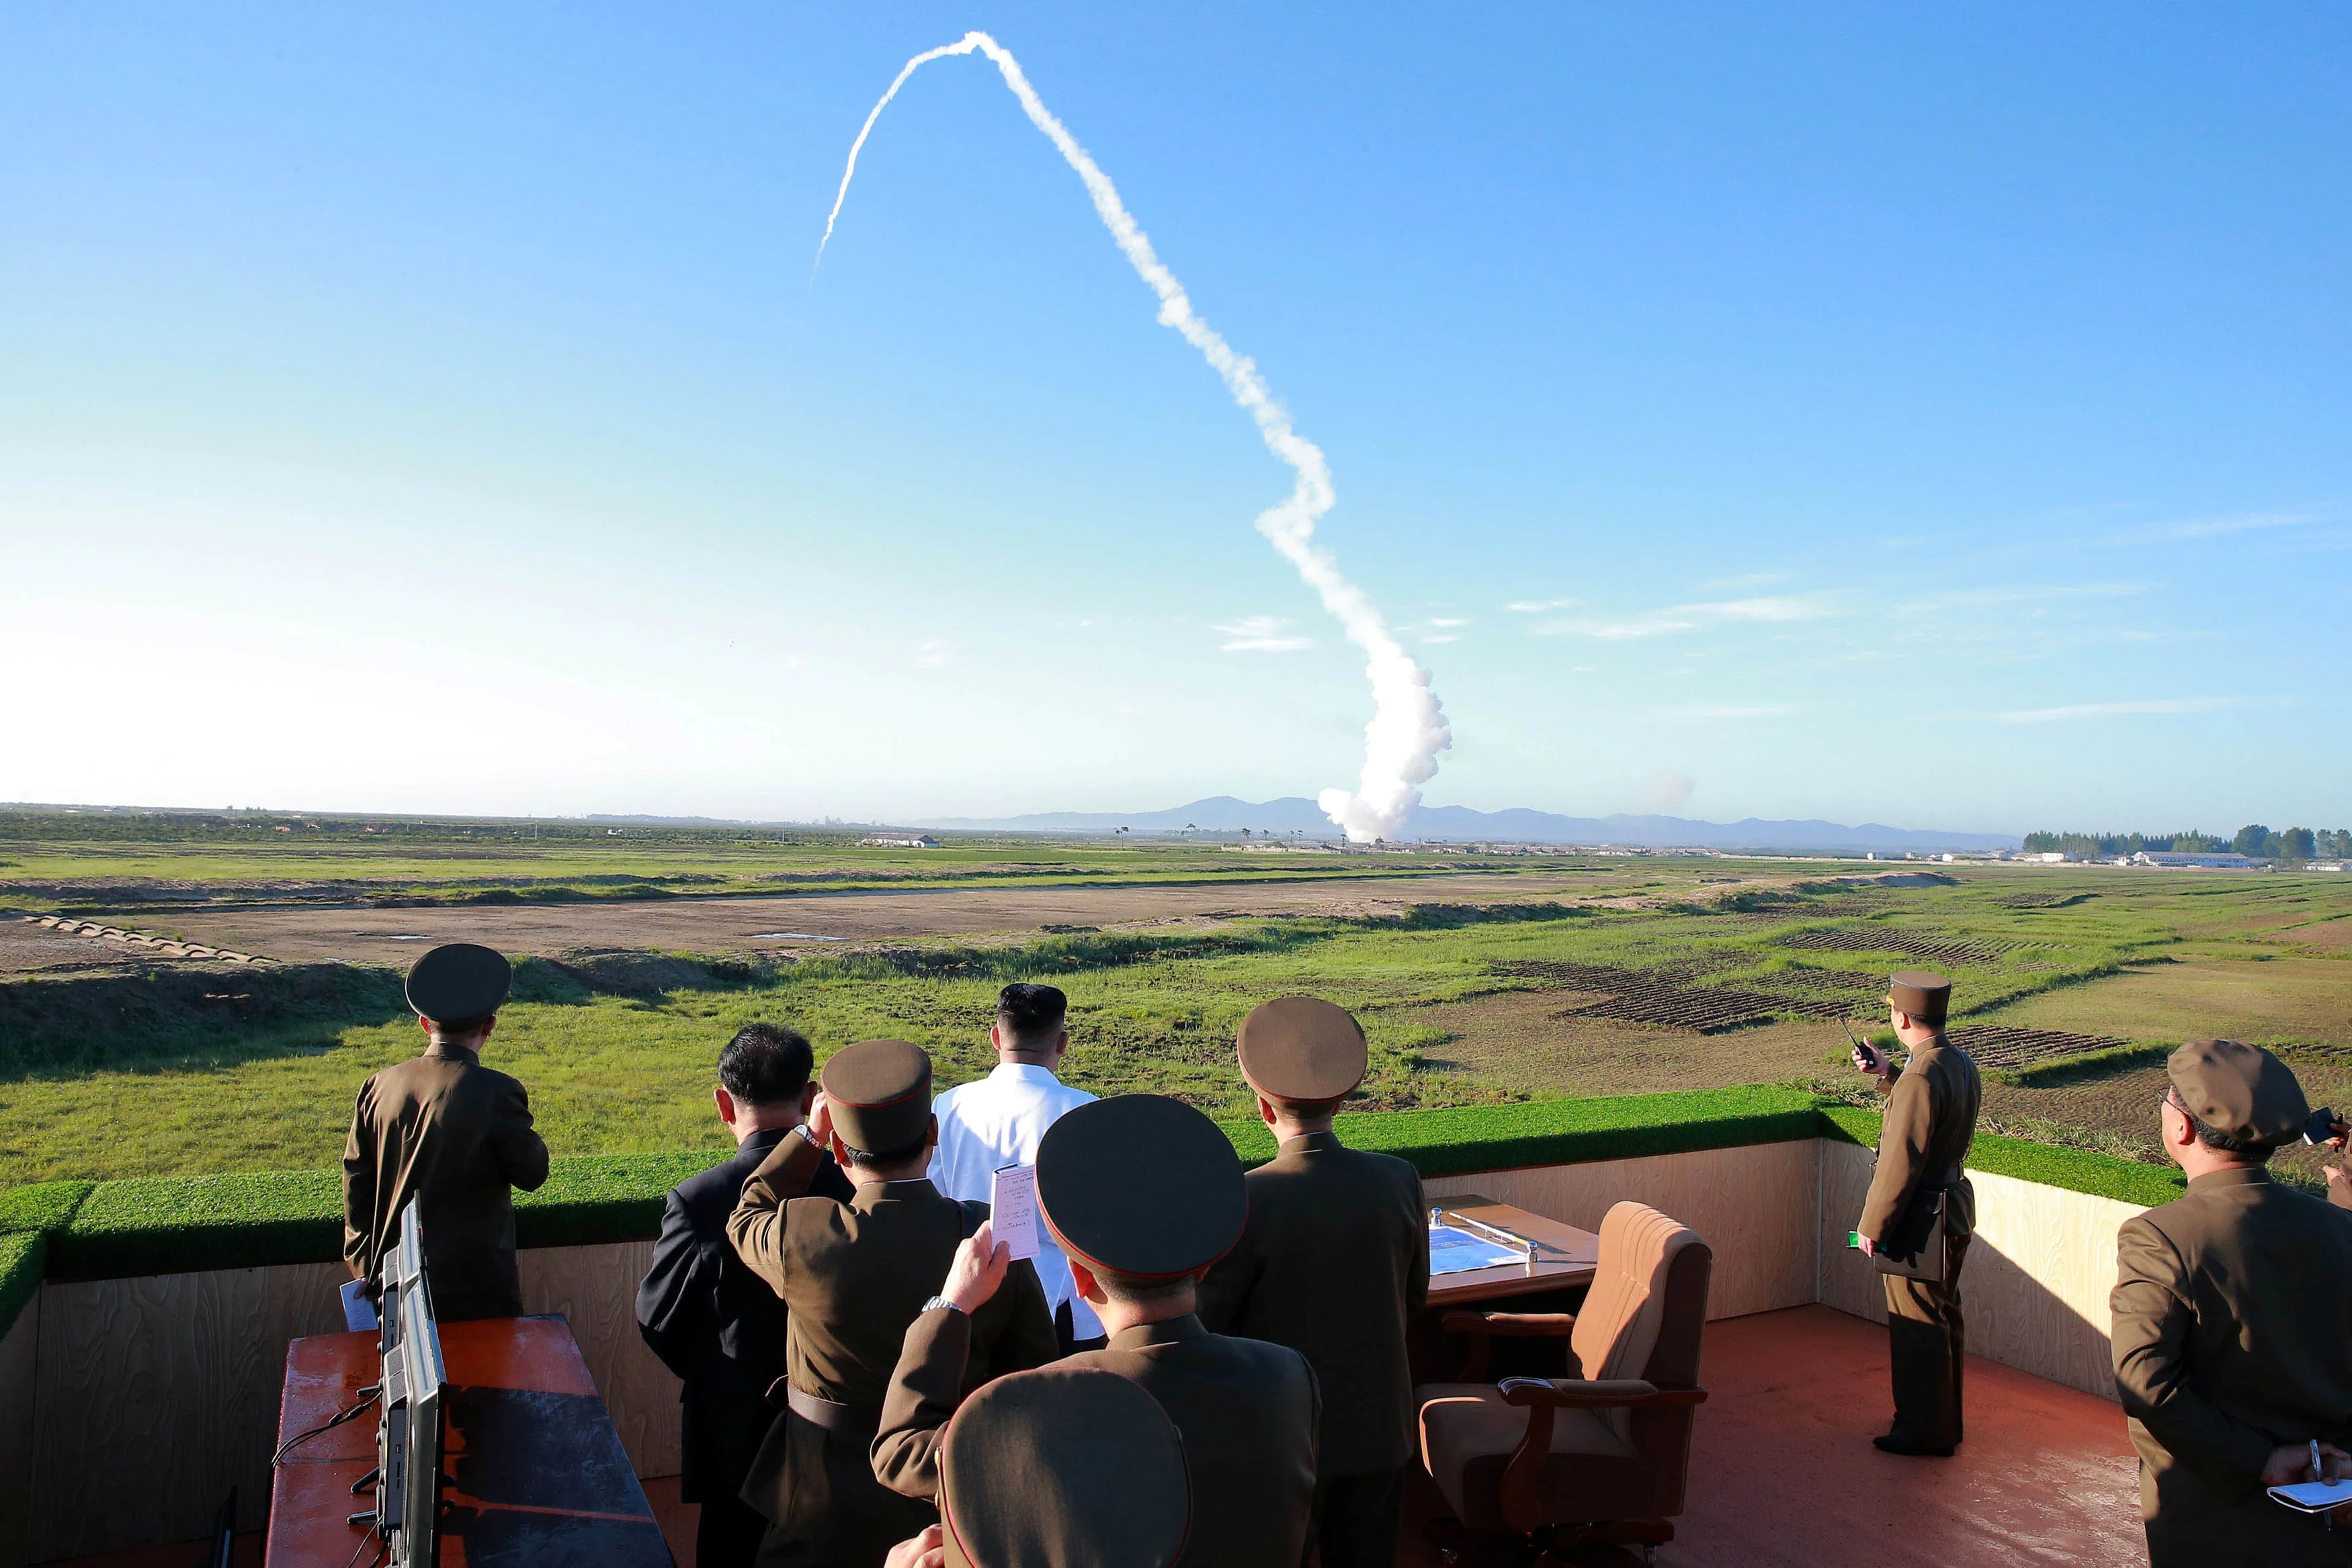 Corea del Norte realizó decenas de pruebas nucleares en 2017